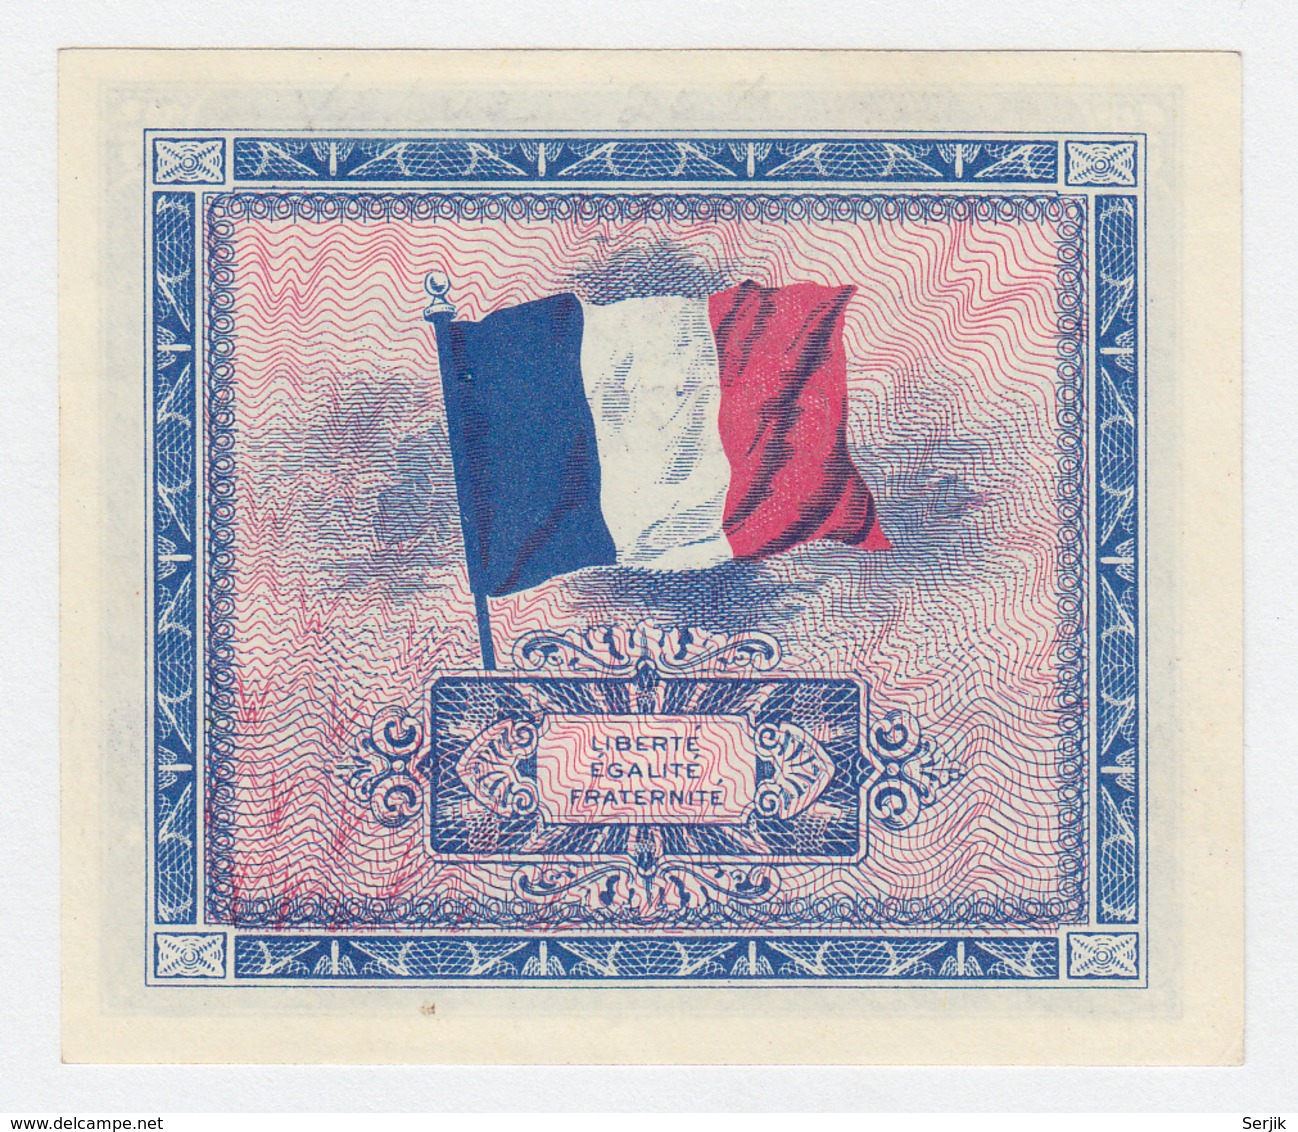 France 10 Francs 1944 XF+ CRISP Banknote Pick 116 - 1944 Flag/France